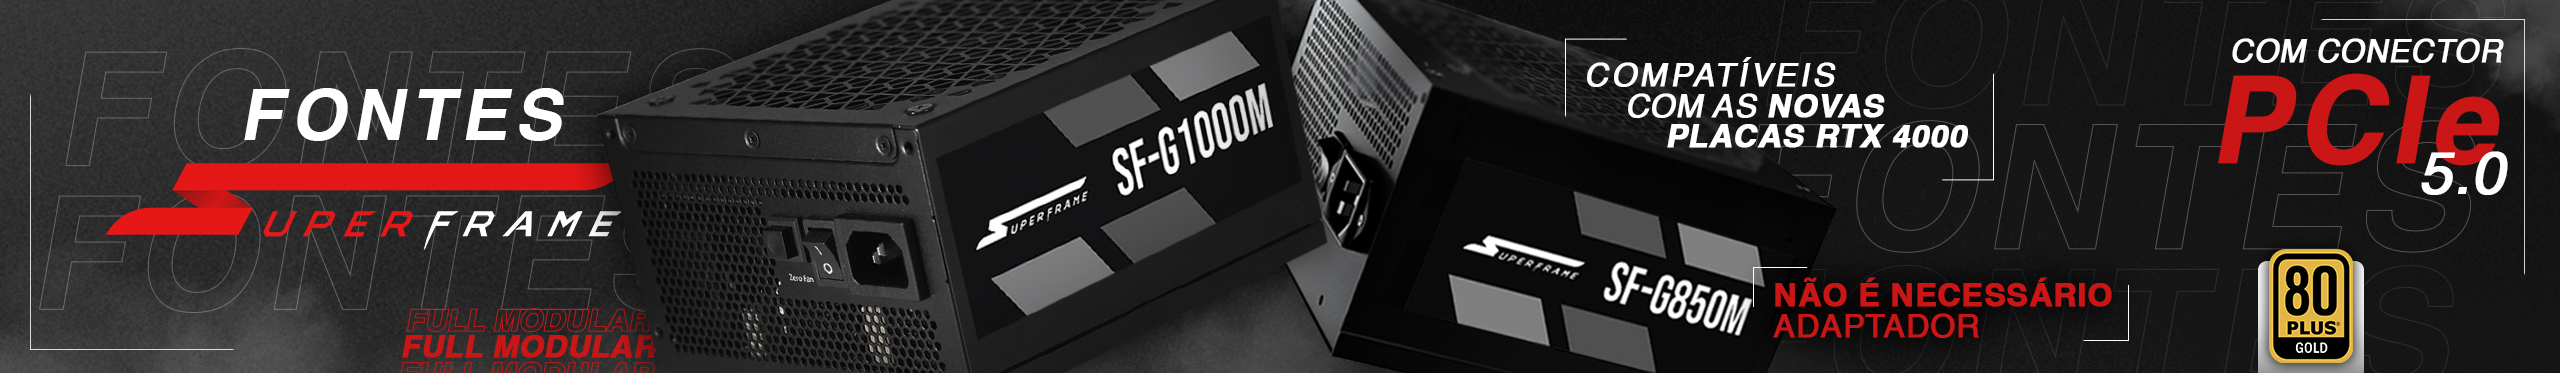 Essas fontes da SuperFrame são compatíveis com as novas placas RTX série 40. Saiba mais!